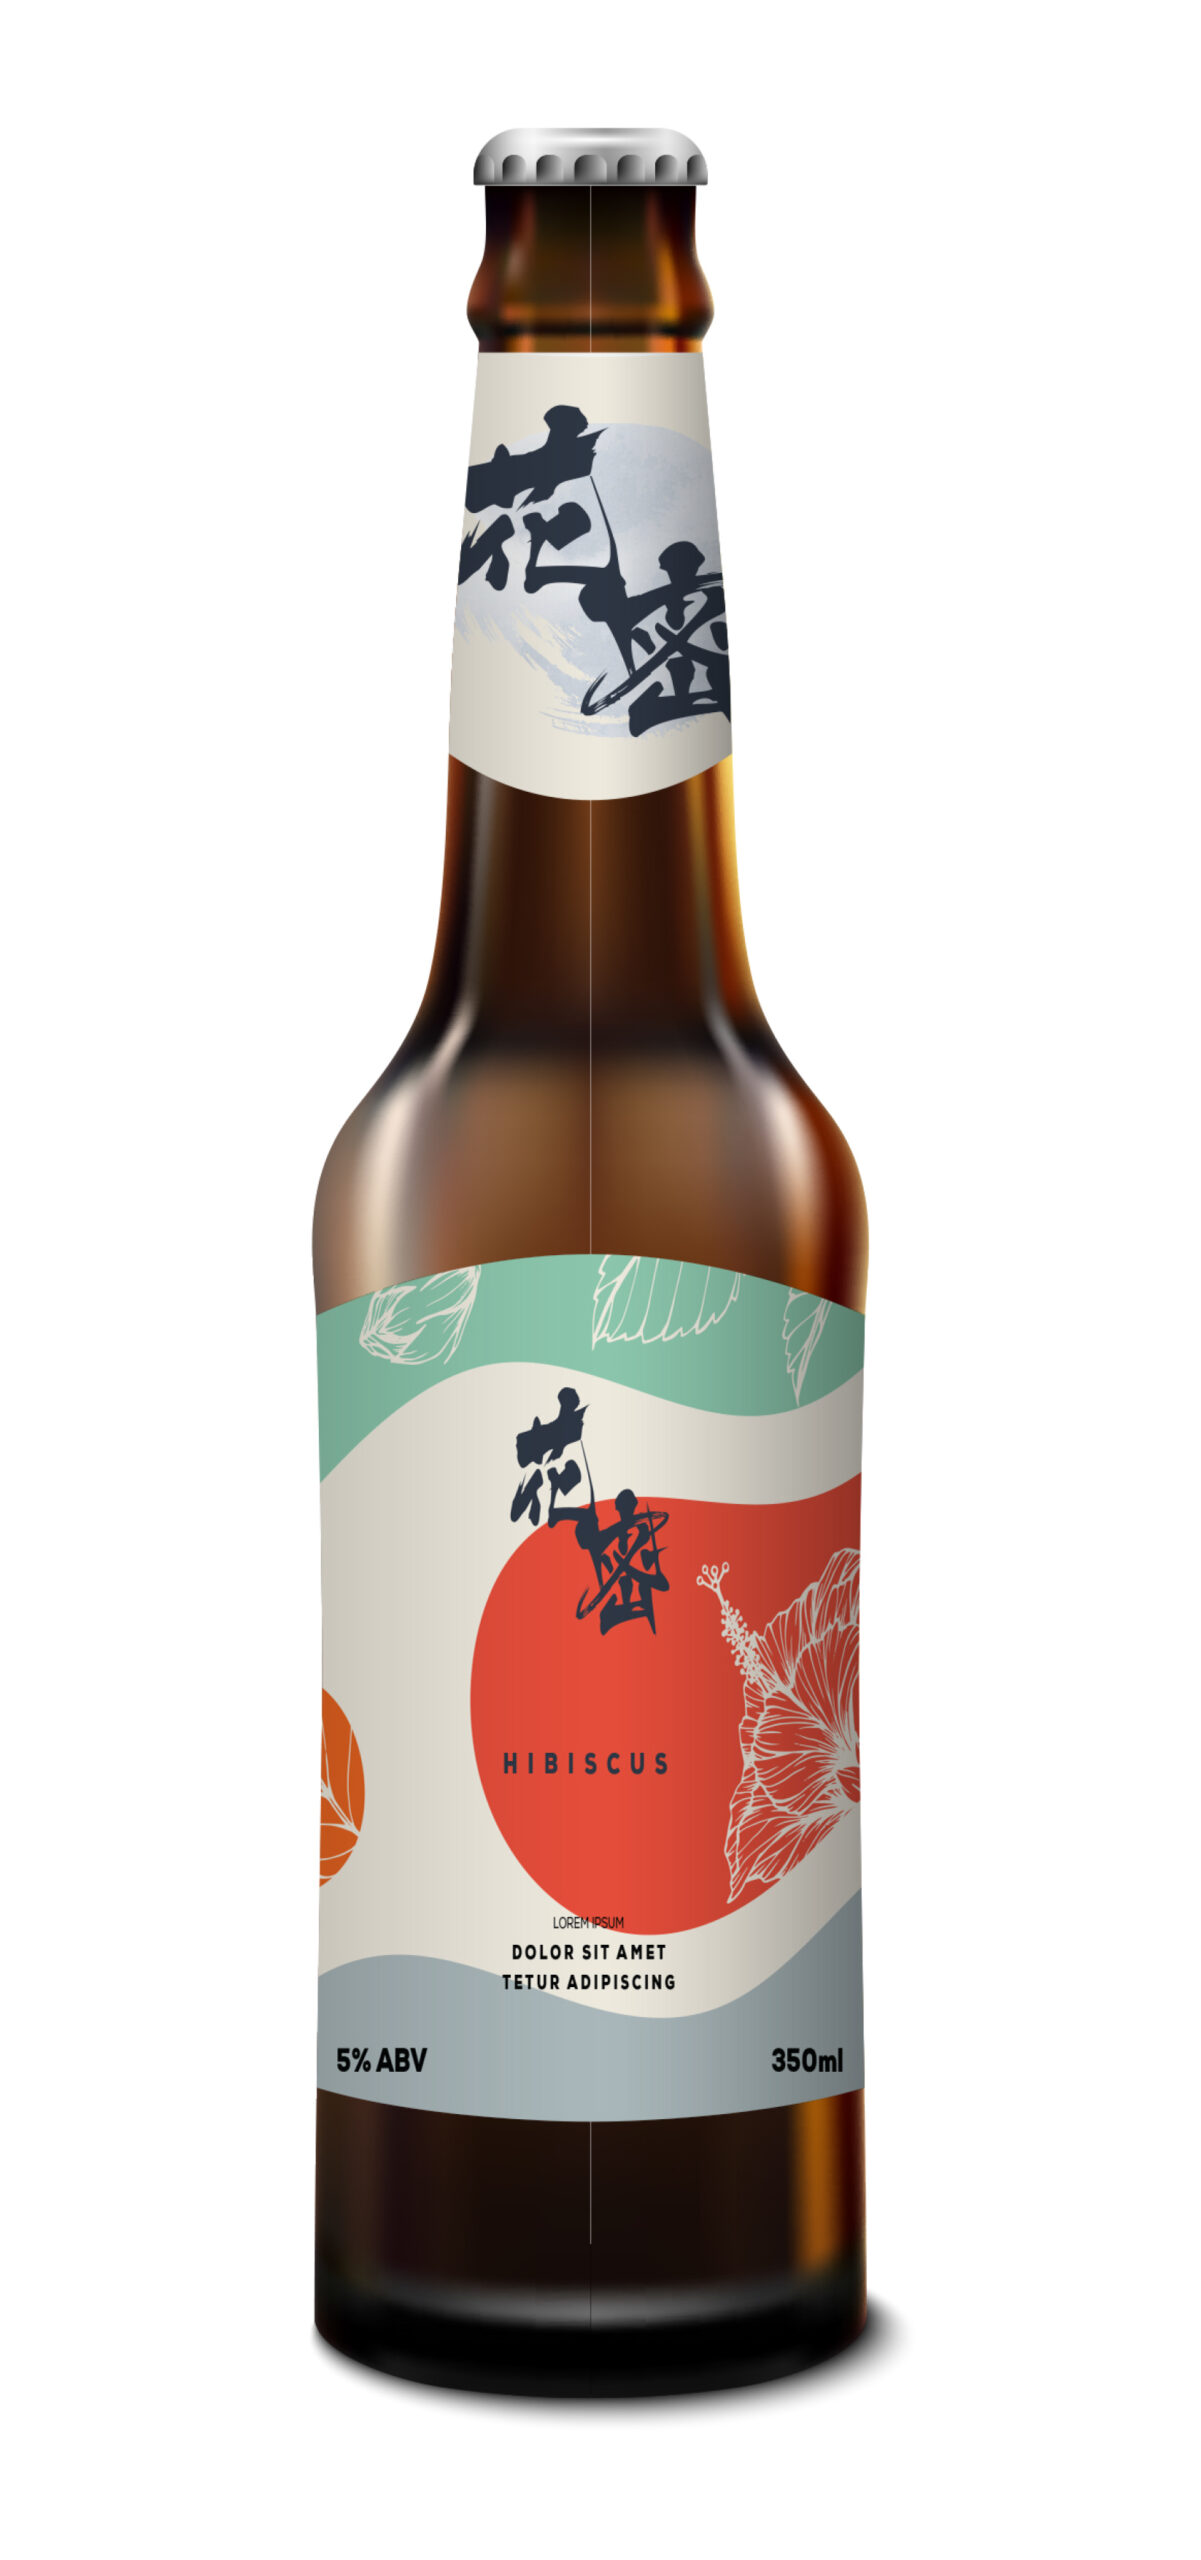 A label design mock up on beer bottle